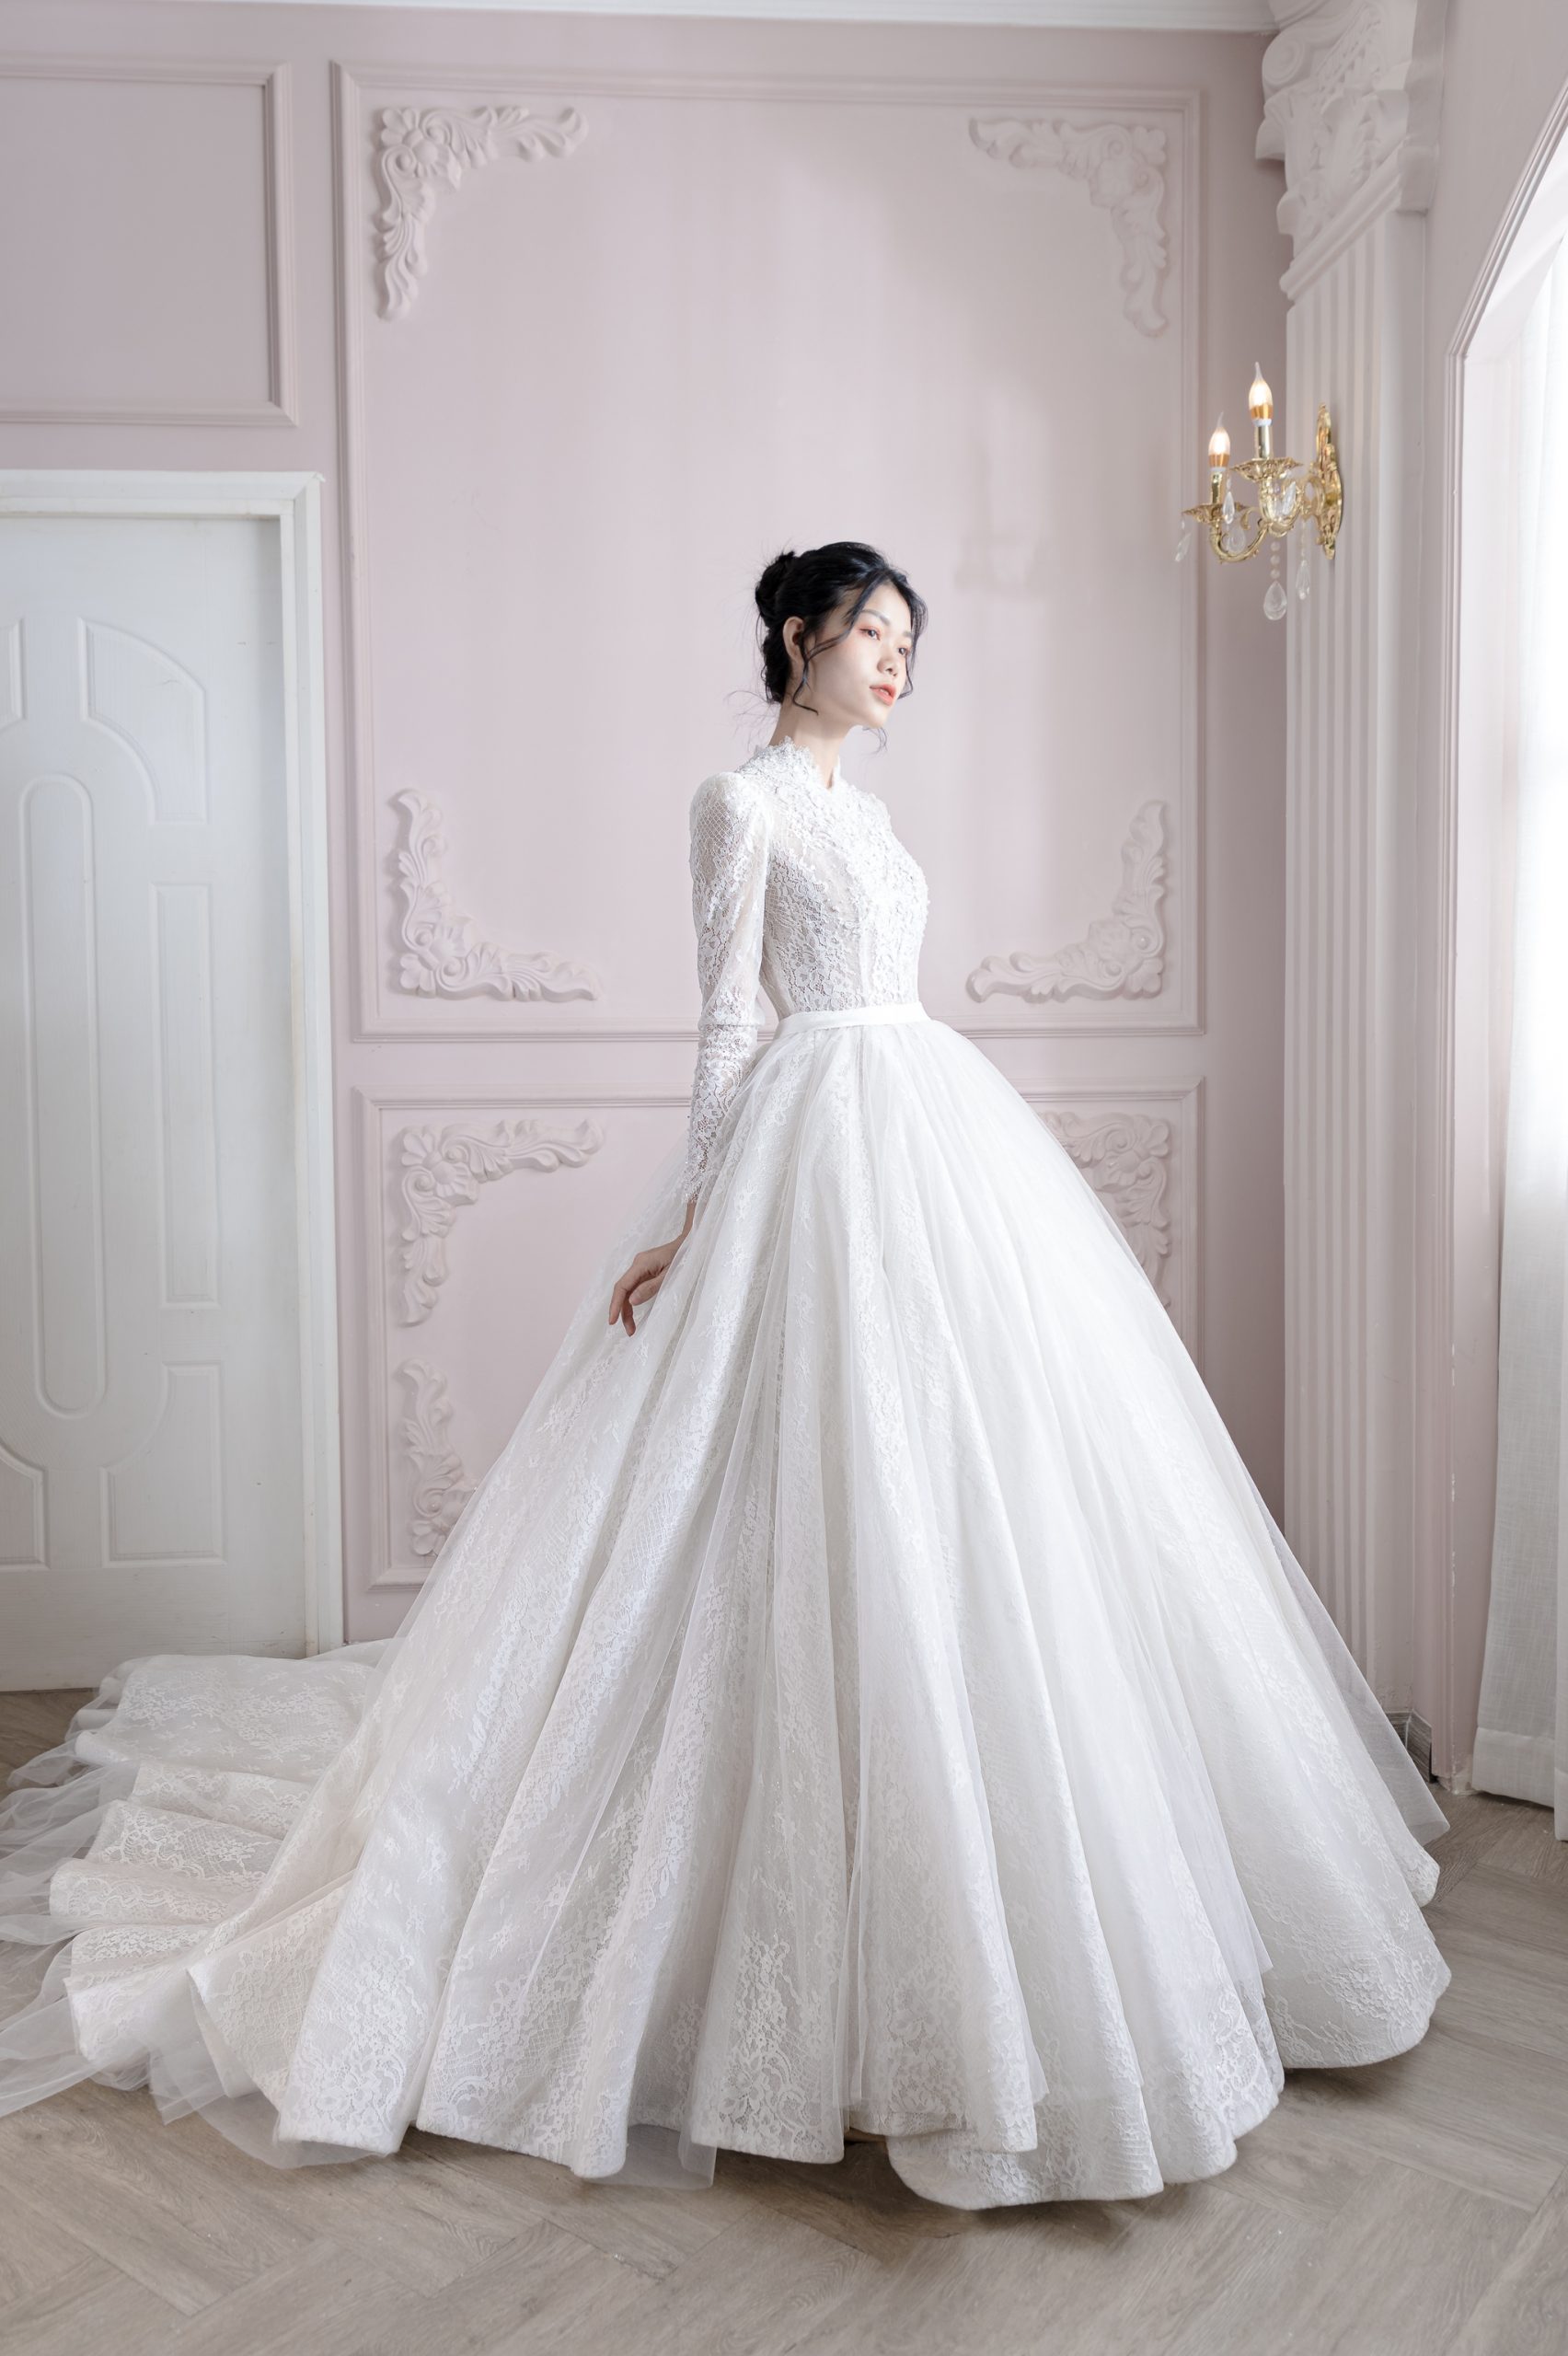 Cận cảnh 3 bộ váy cưới tuyệt đẹp của cô dâu Doãn Hải My trong tiệc cưới tại  Hà Nội